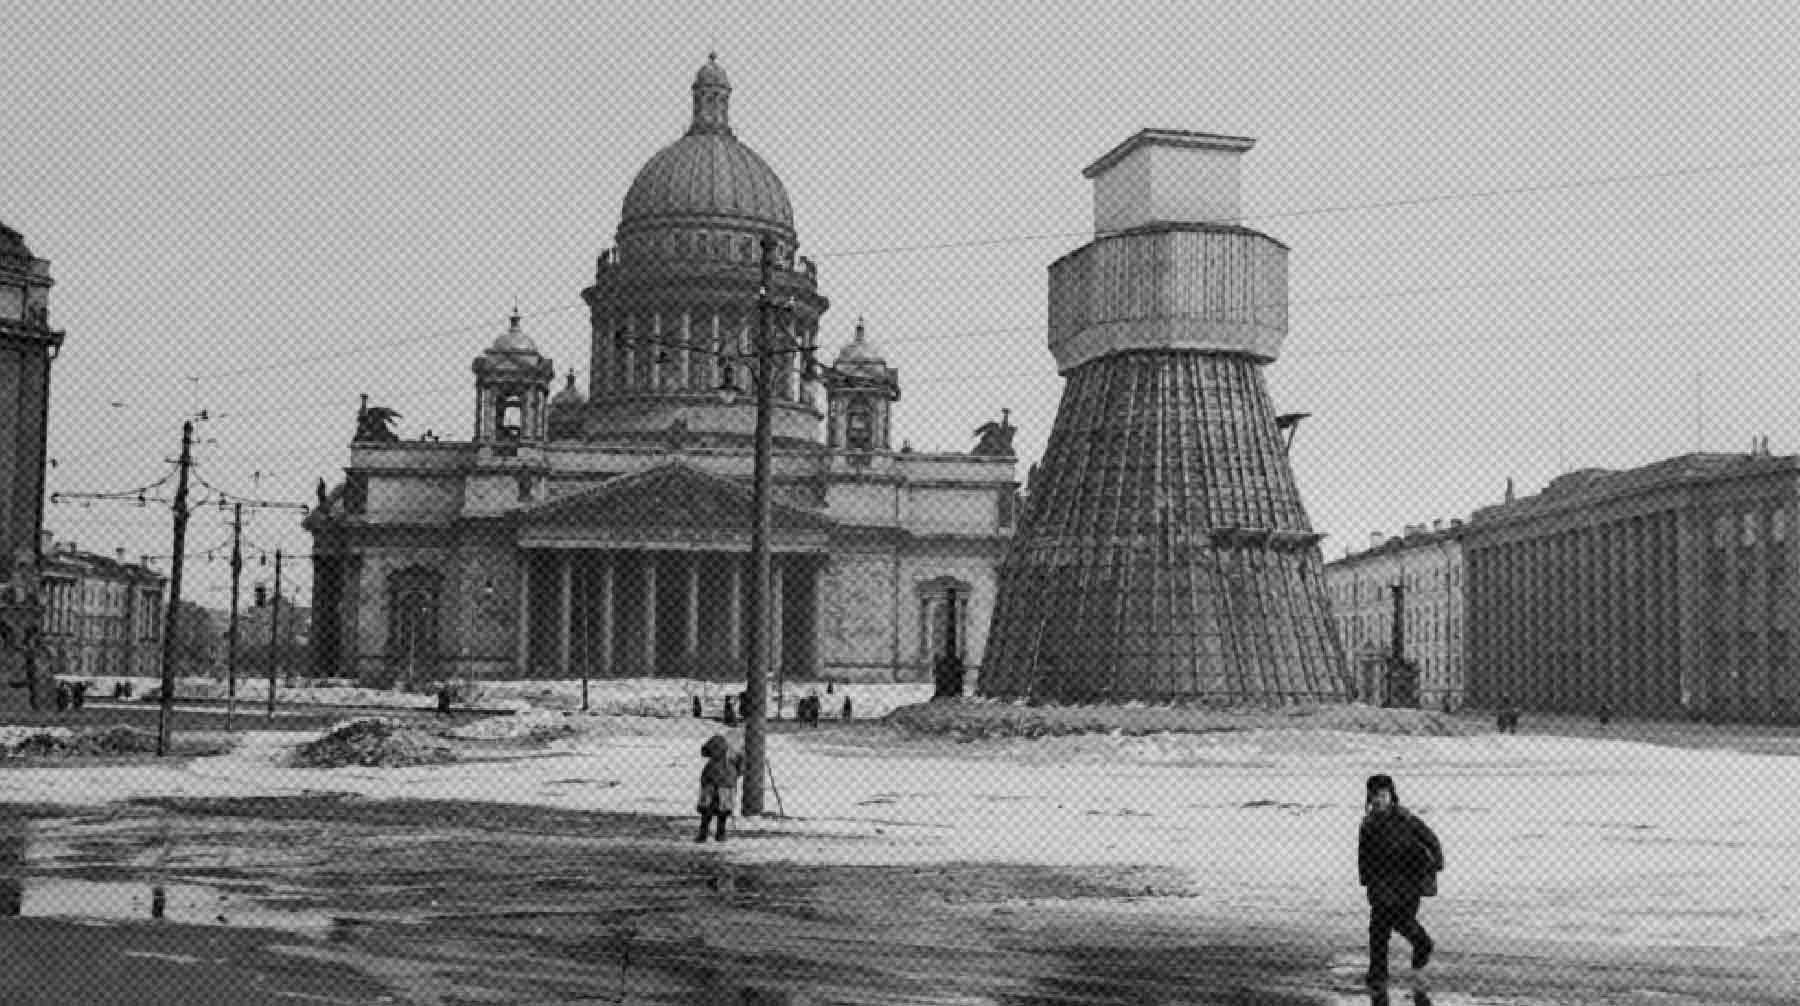 Dailystorm - Город, переживший ад. Как Ленинград выдержал блокаду